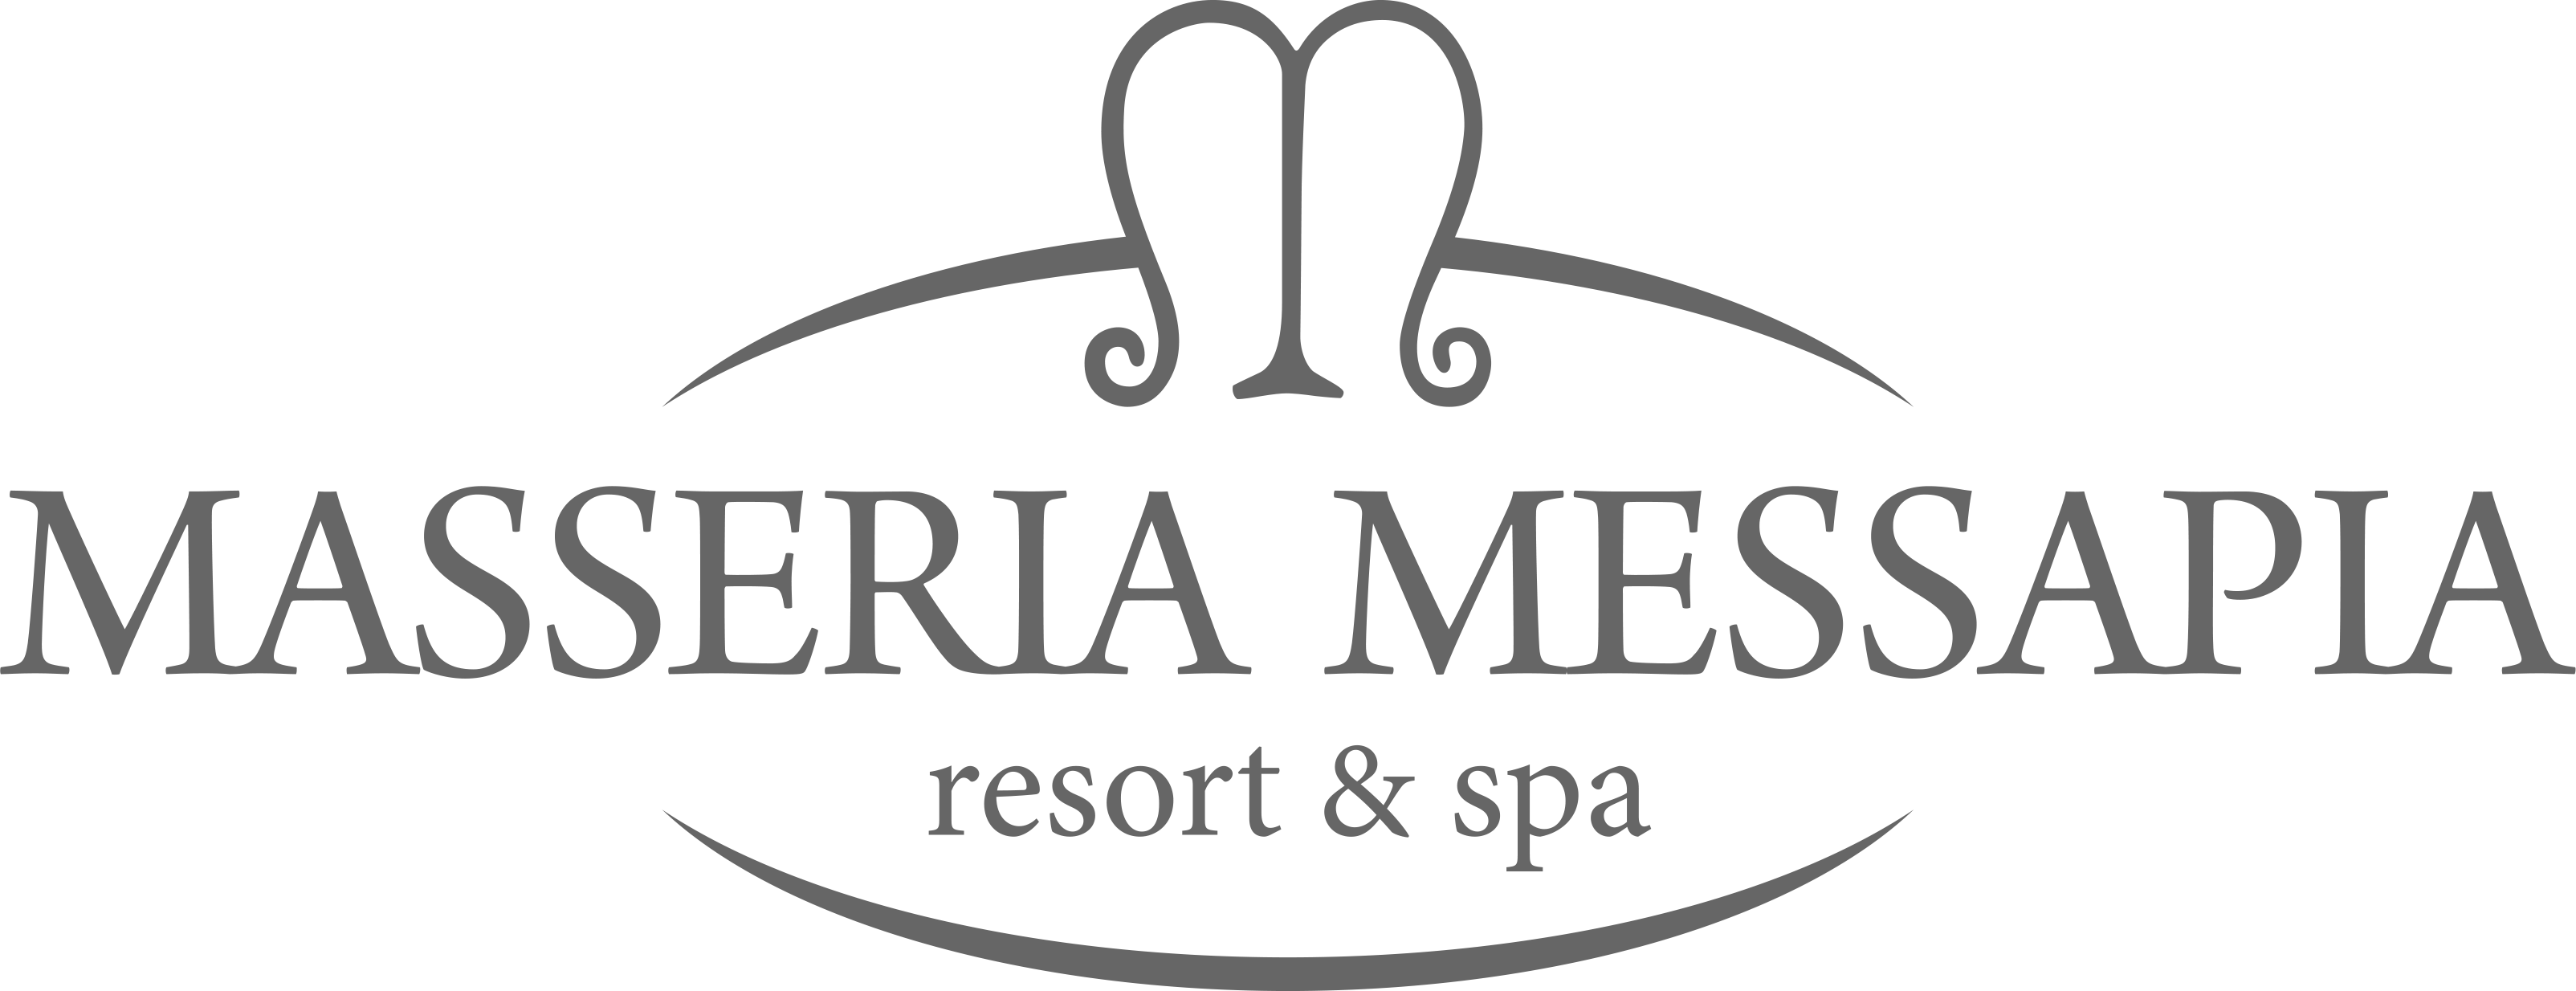 Masseria Messapia Resort & Spa – Ristorante tipico e Bed & Breakfast in Puglia nel Salento – Mesagne